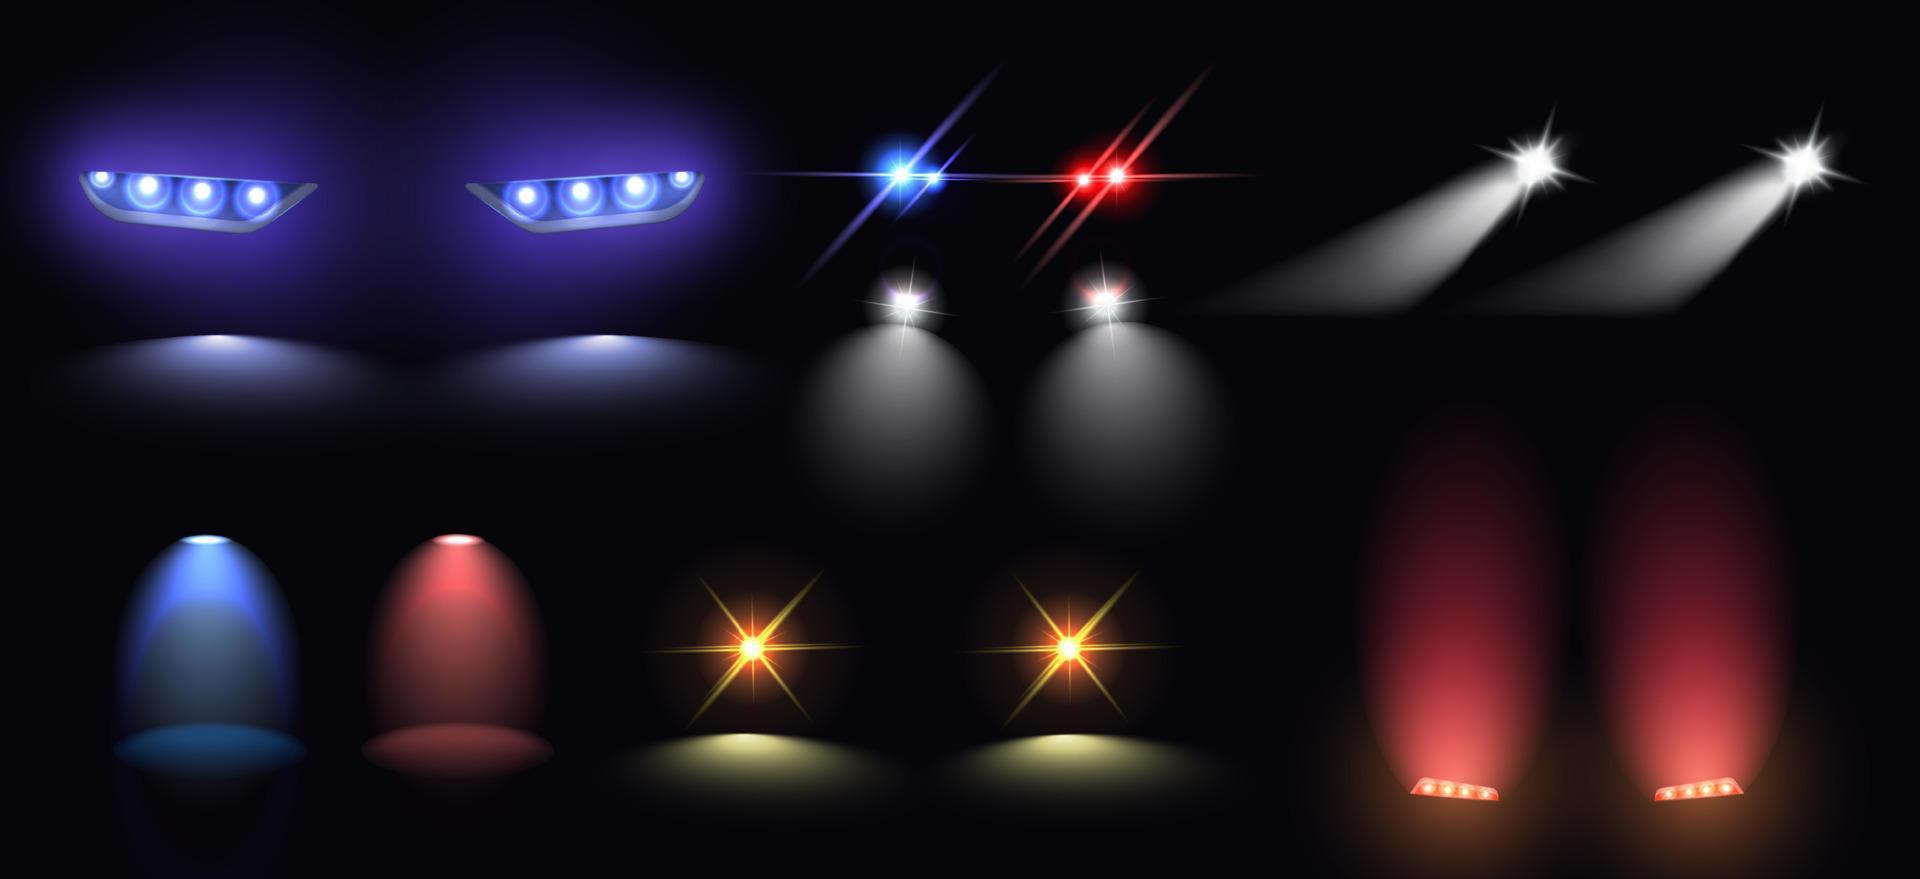 realistisk uppsättning av färgrik bil strålkastare svans och siren lampor isolerat på svart bakgrund vektor illustration.